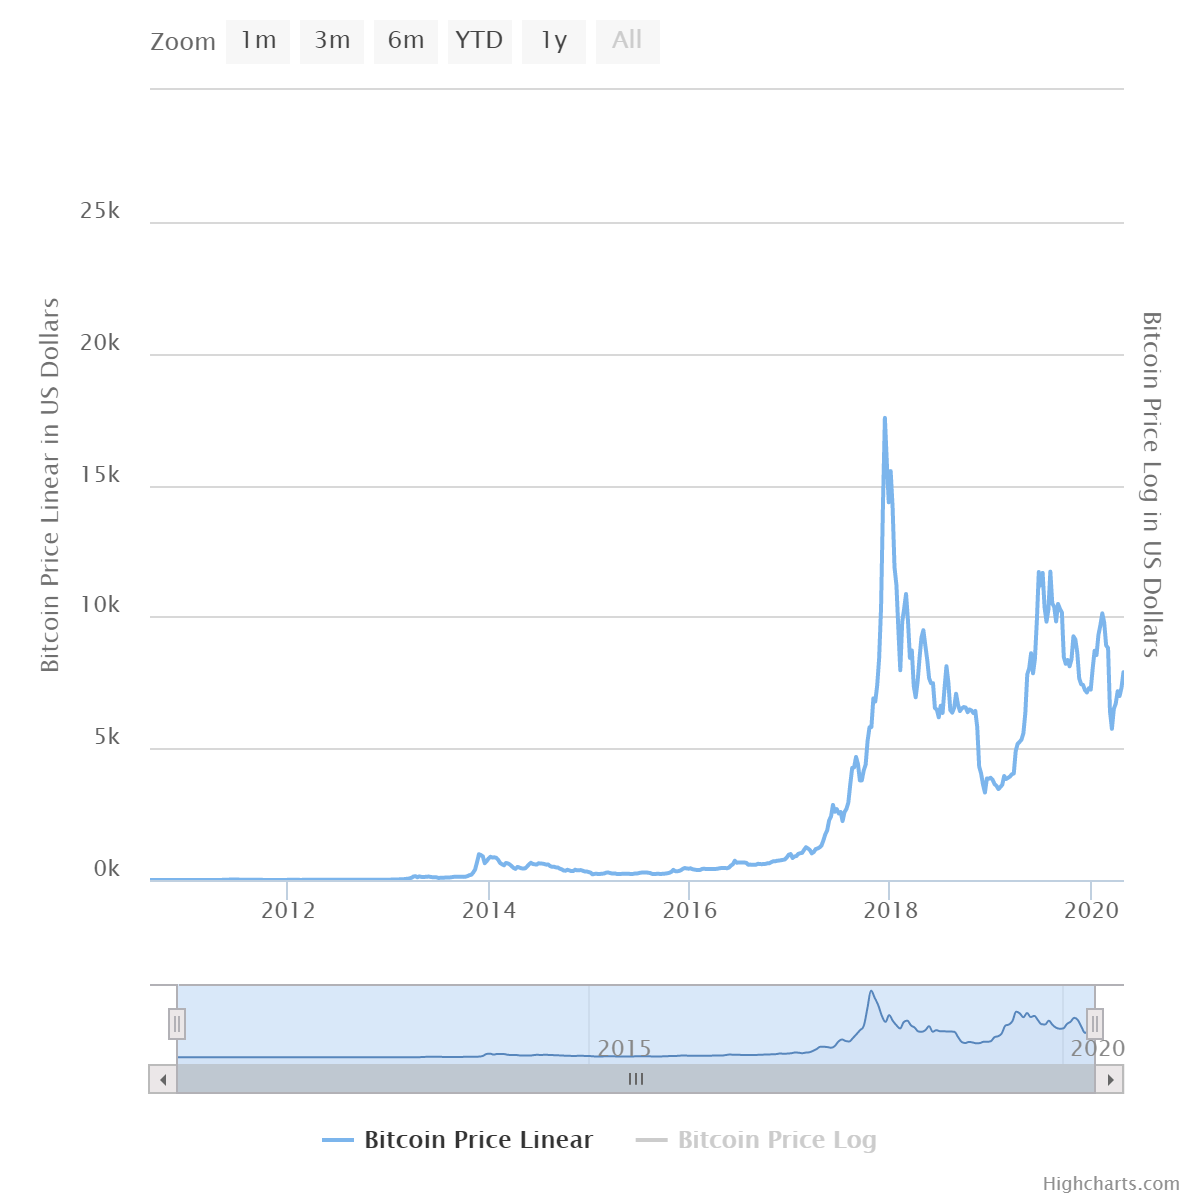 Szárnyalás után összeomlás - Néhány nap alatt esett össze a Bitcoin